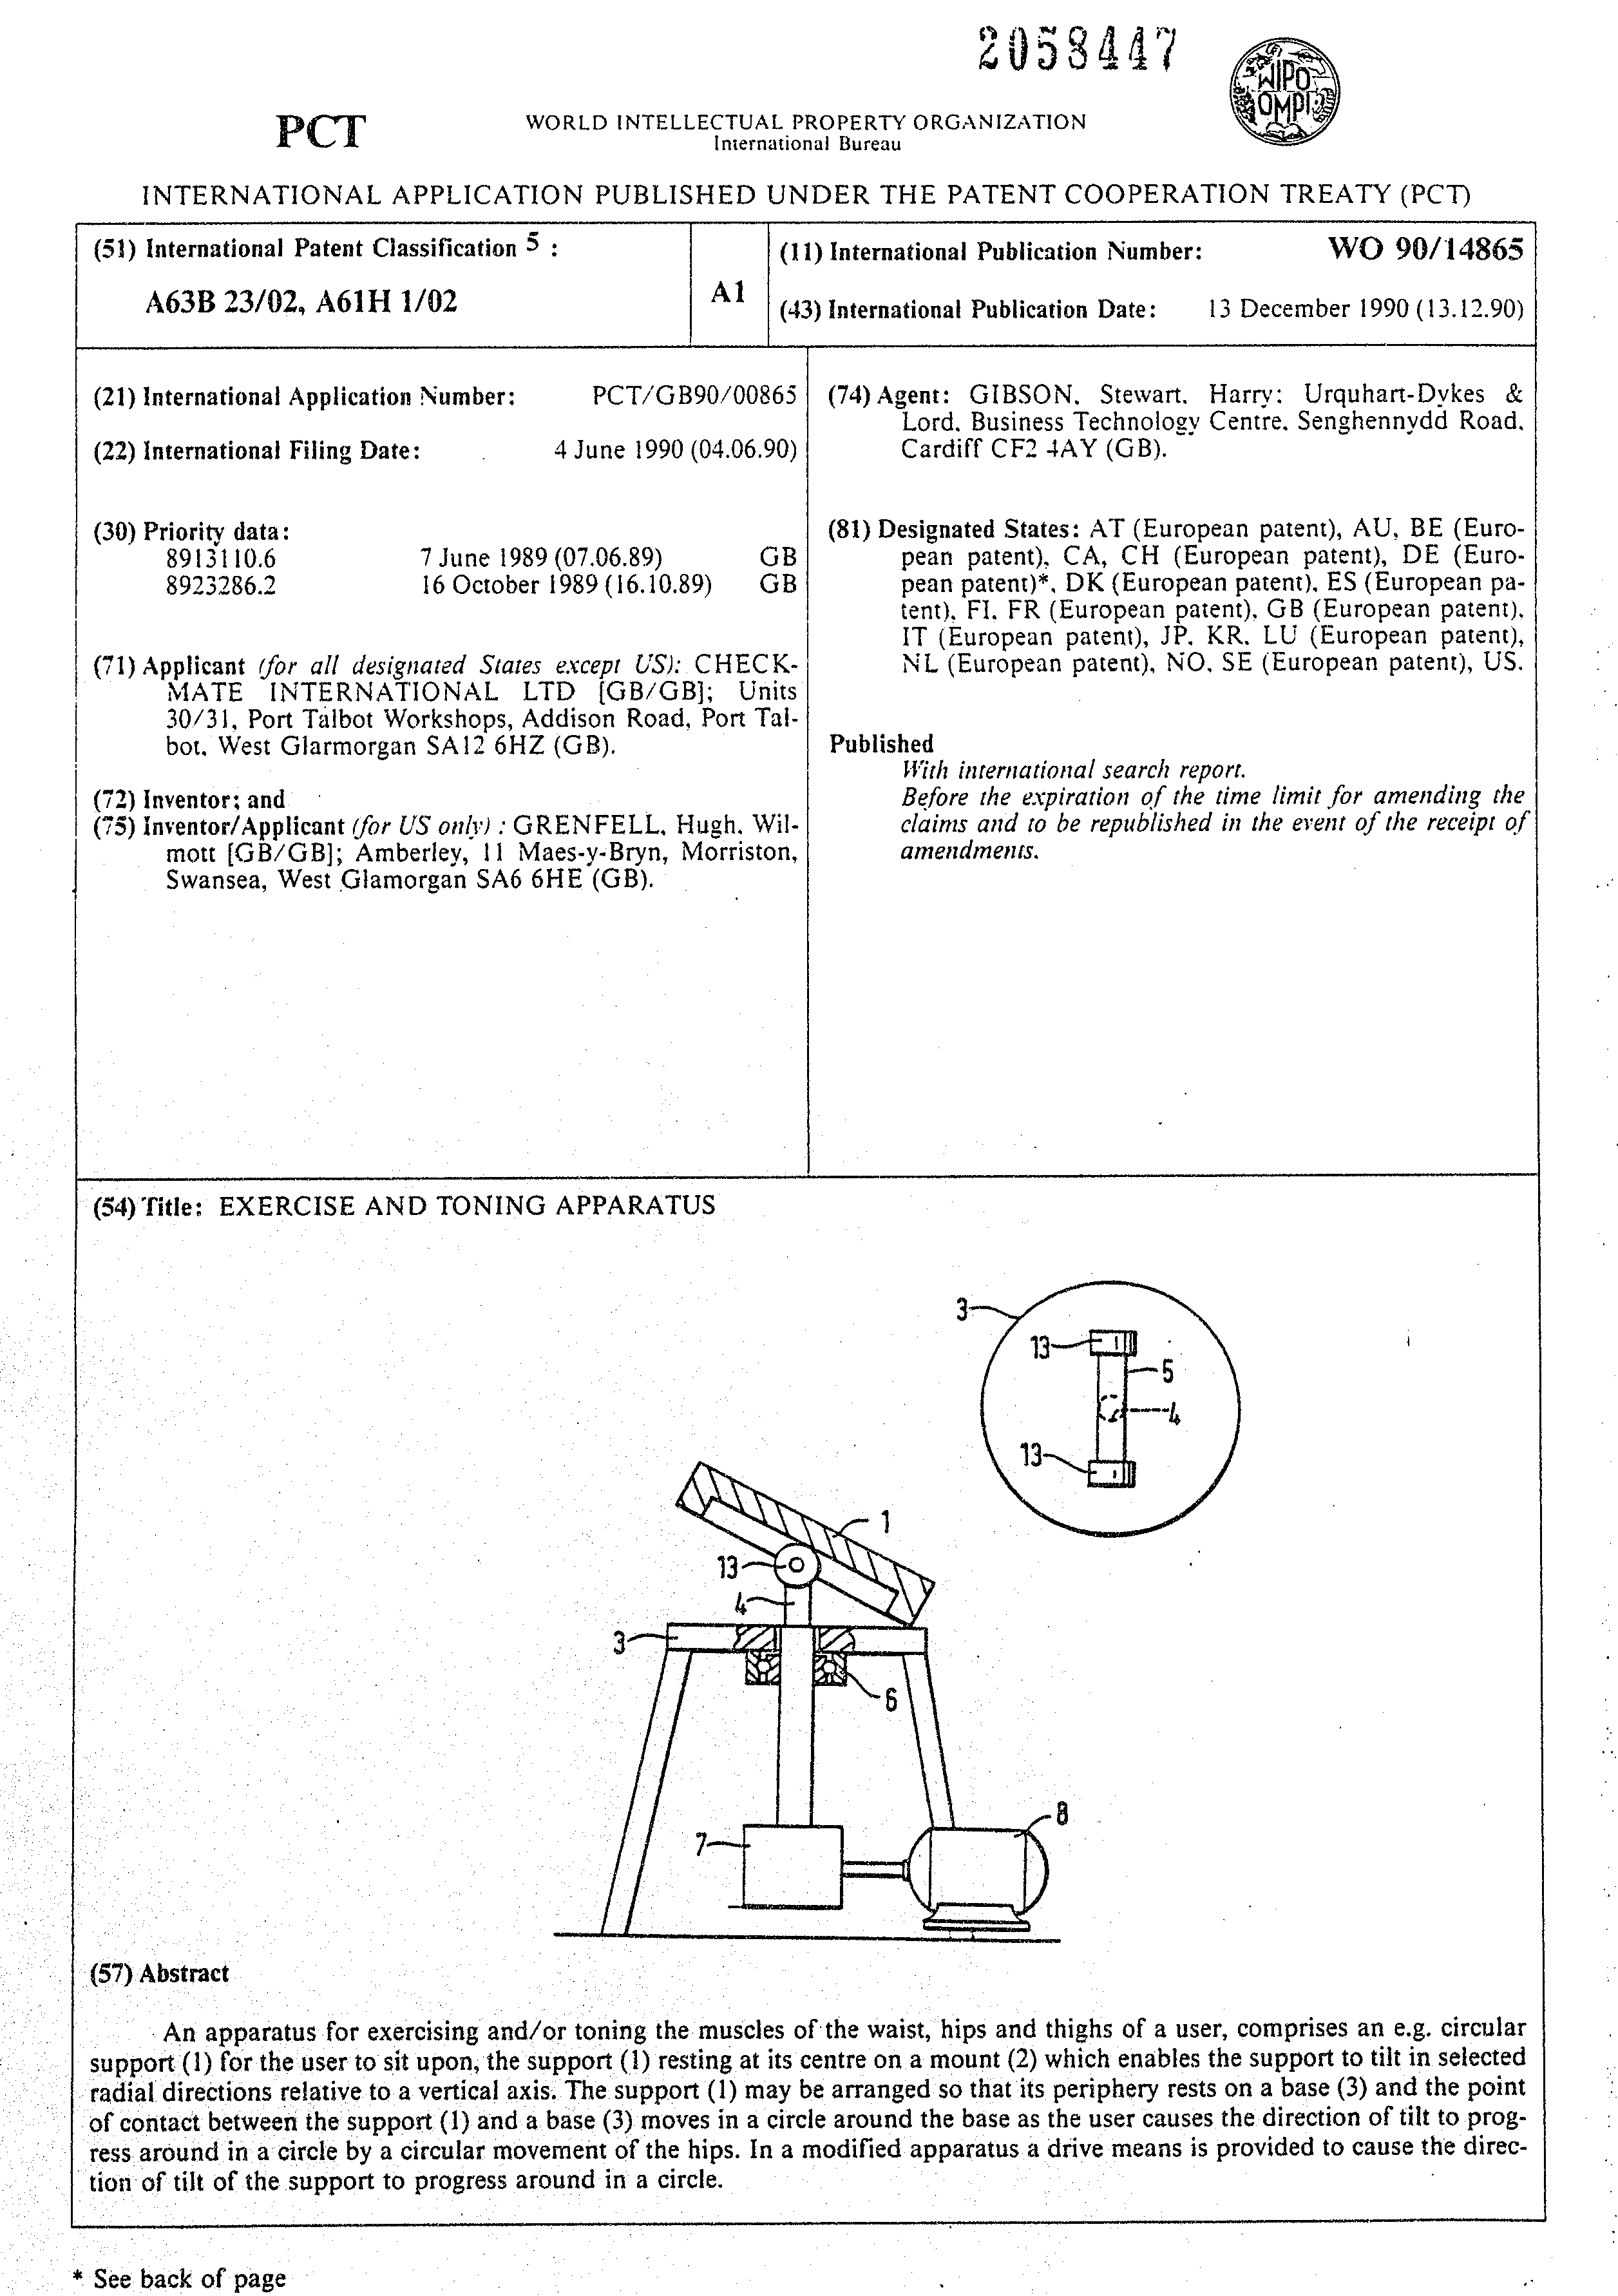 Document de brevet canadien 2058447. Abr%C3%A9g%C3%A9 19891208. Image 1 de 1